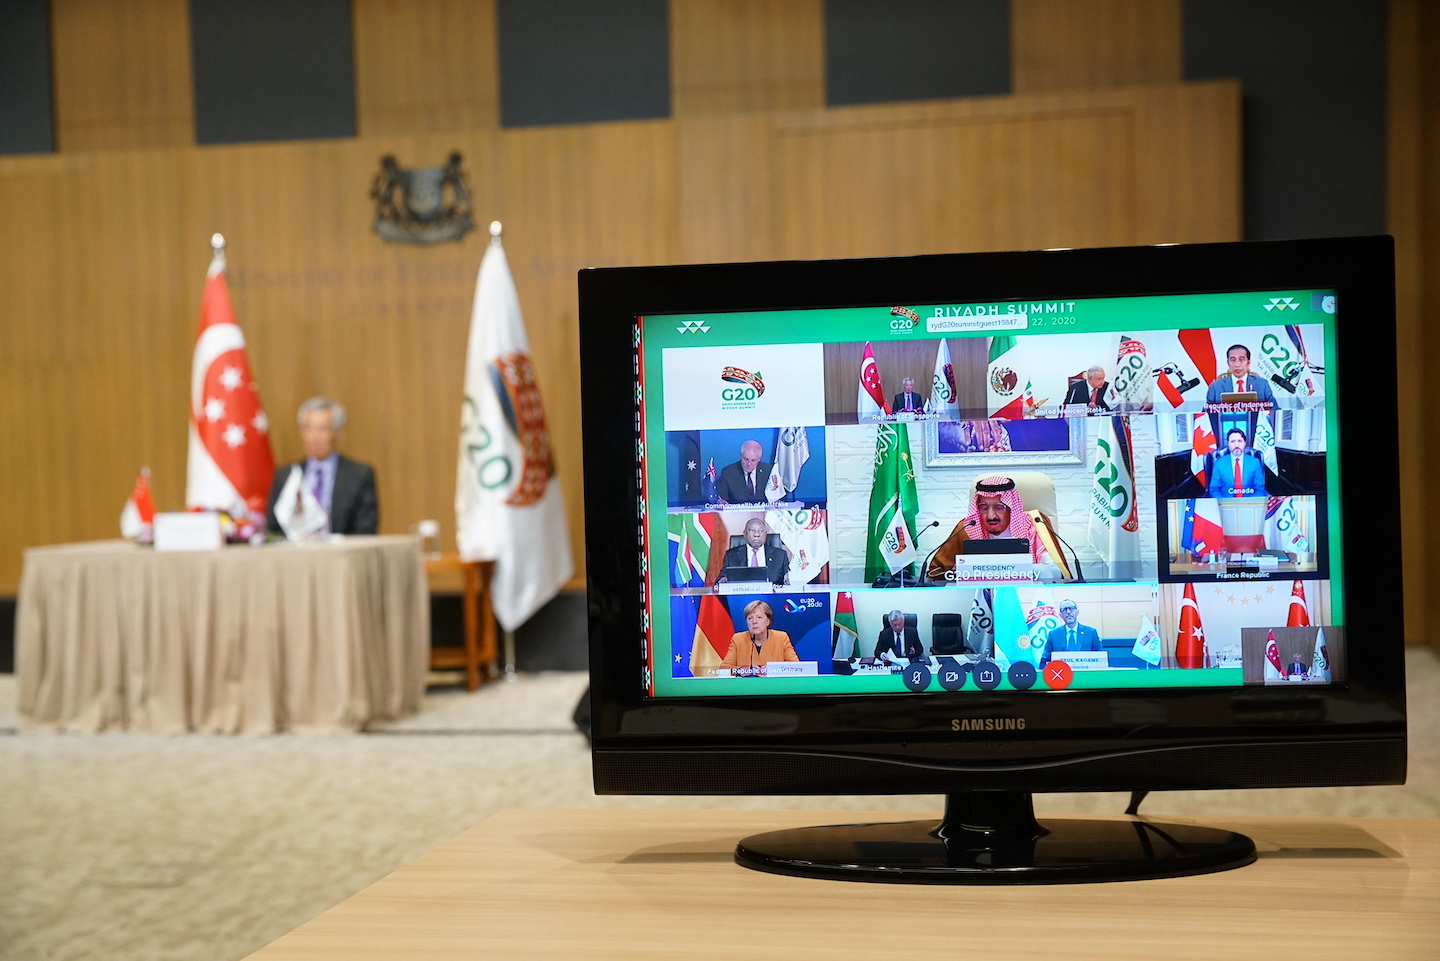 G20 Riyadh Summit DSC09899 jpg